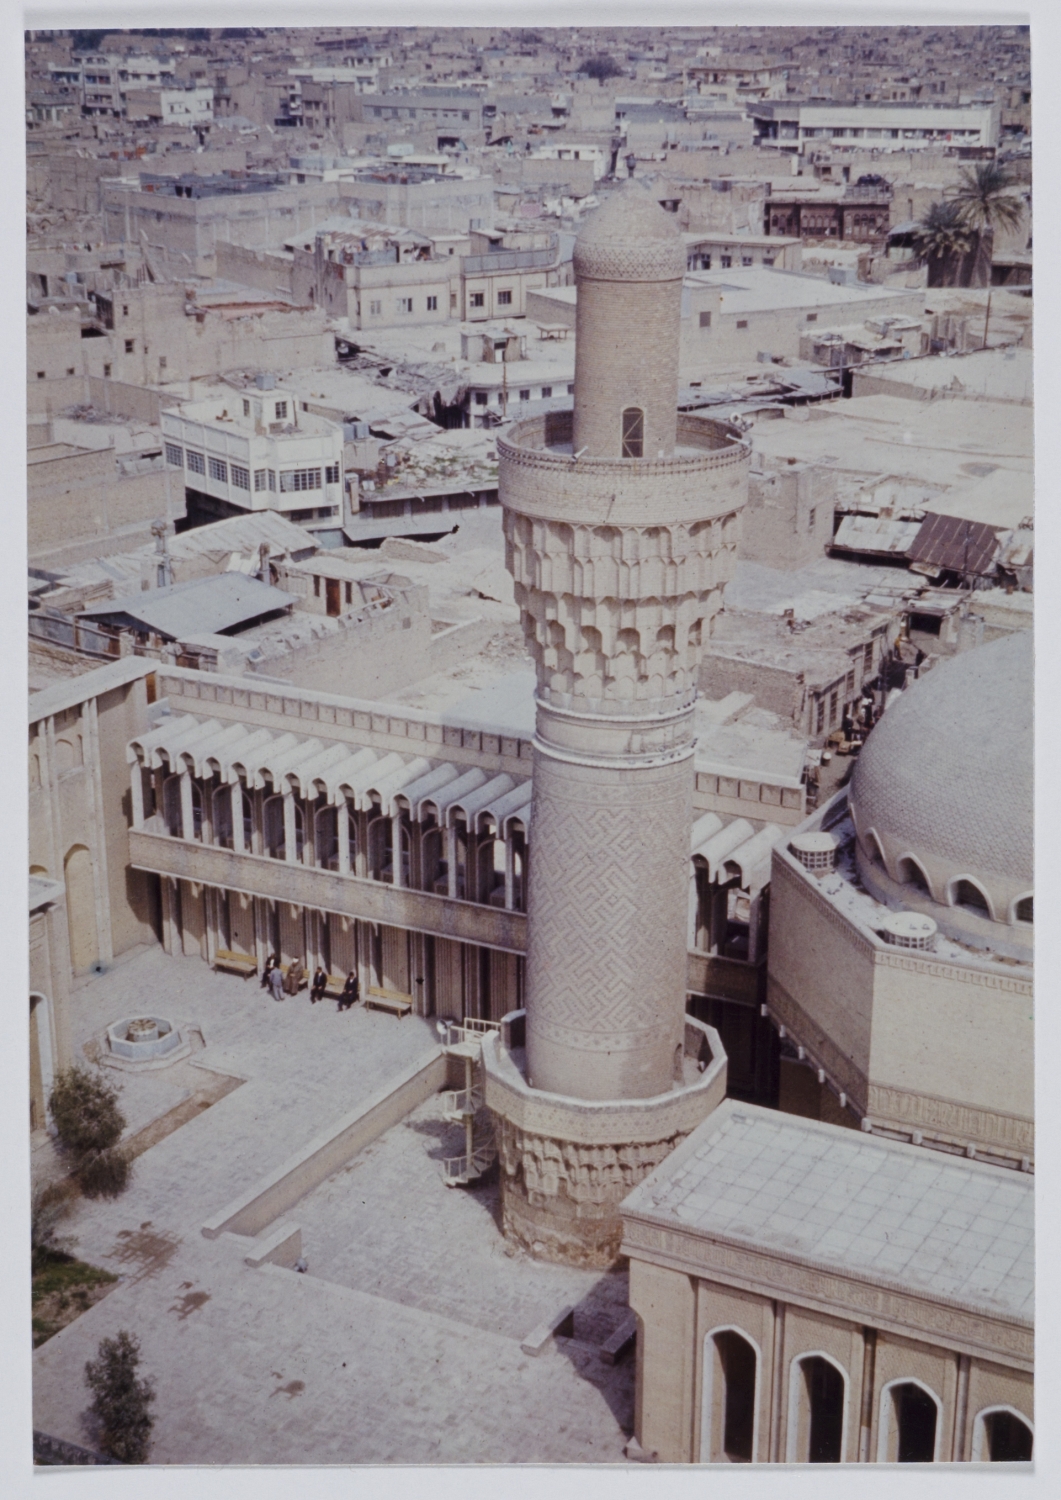 Suq al-Ghazl Minaret - Bird's-eye view of courtyard with minaret and riwaq